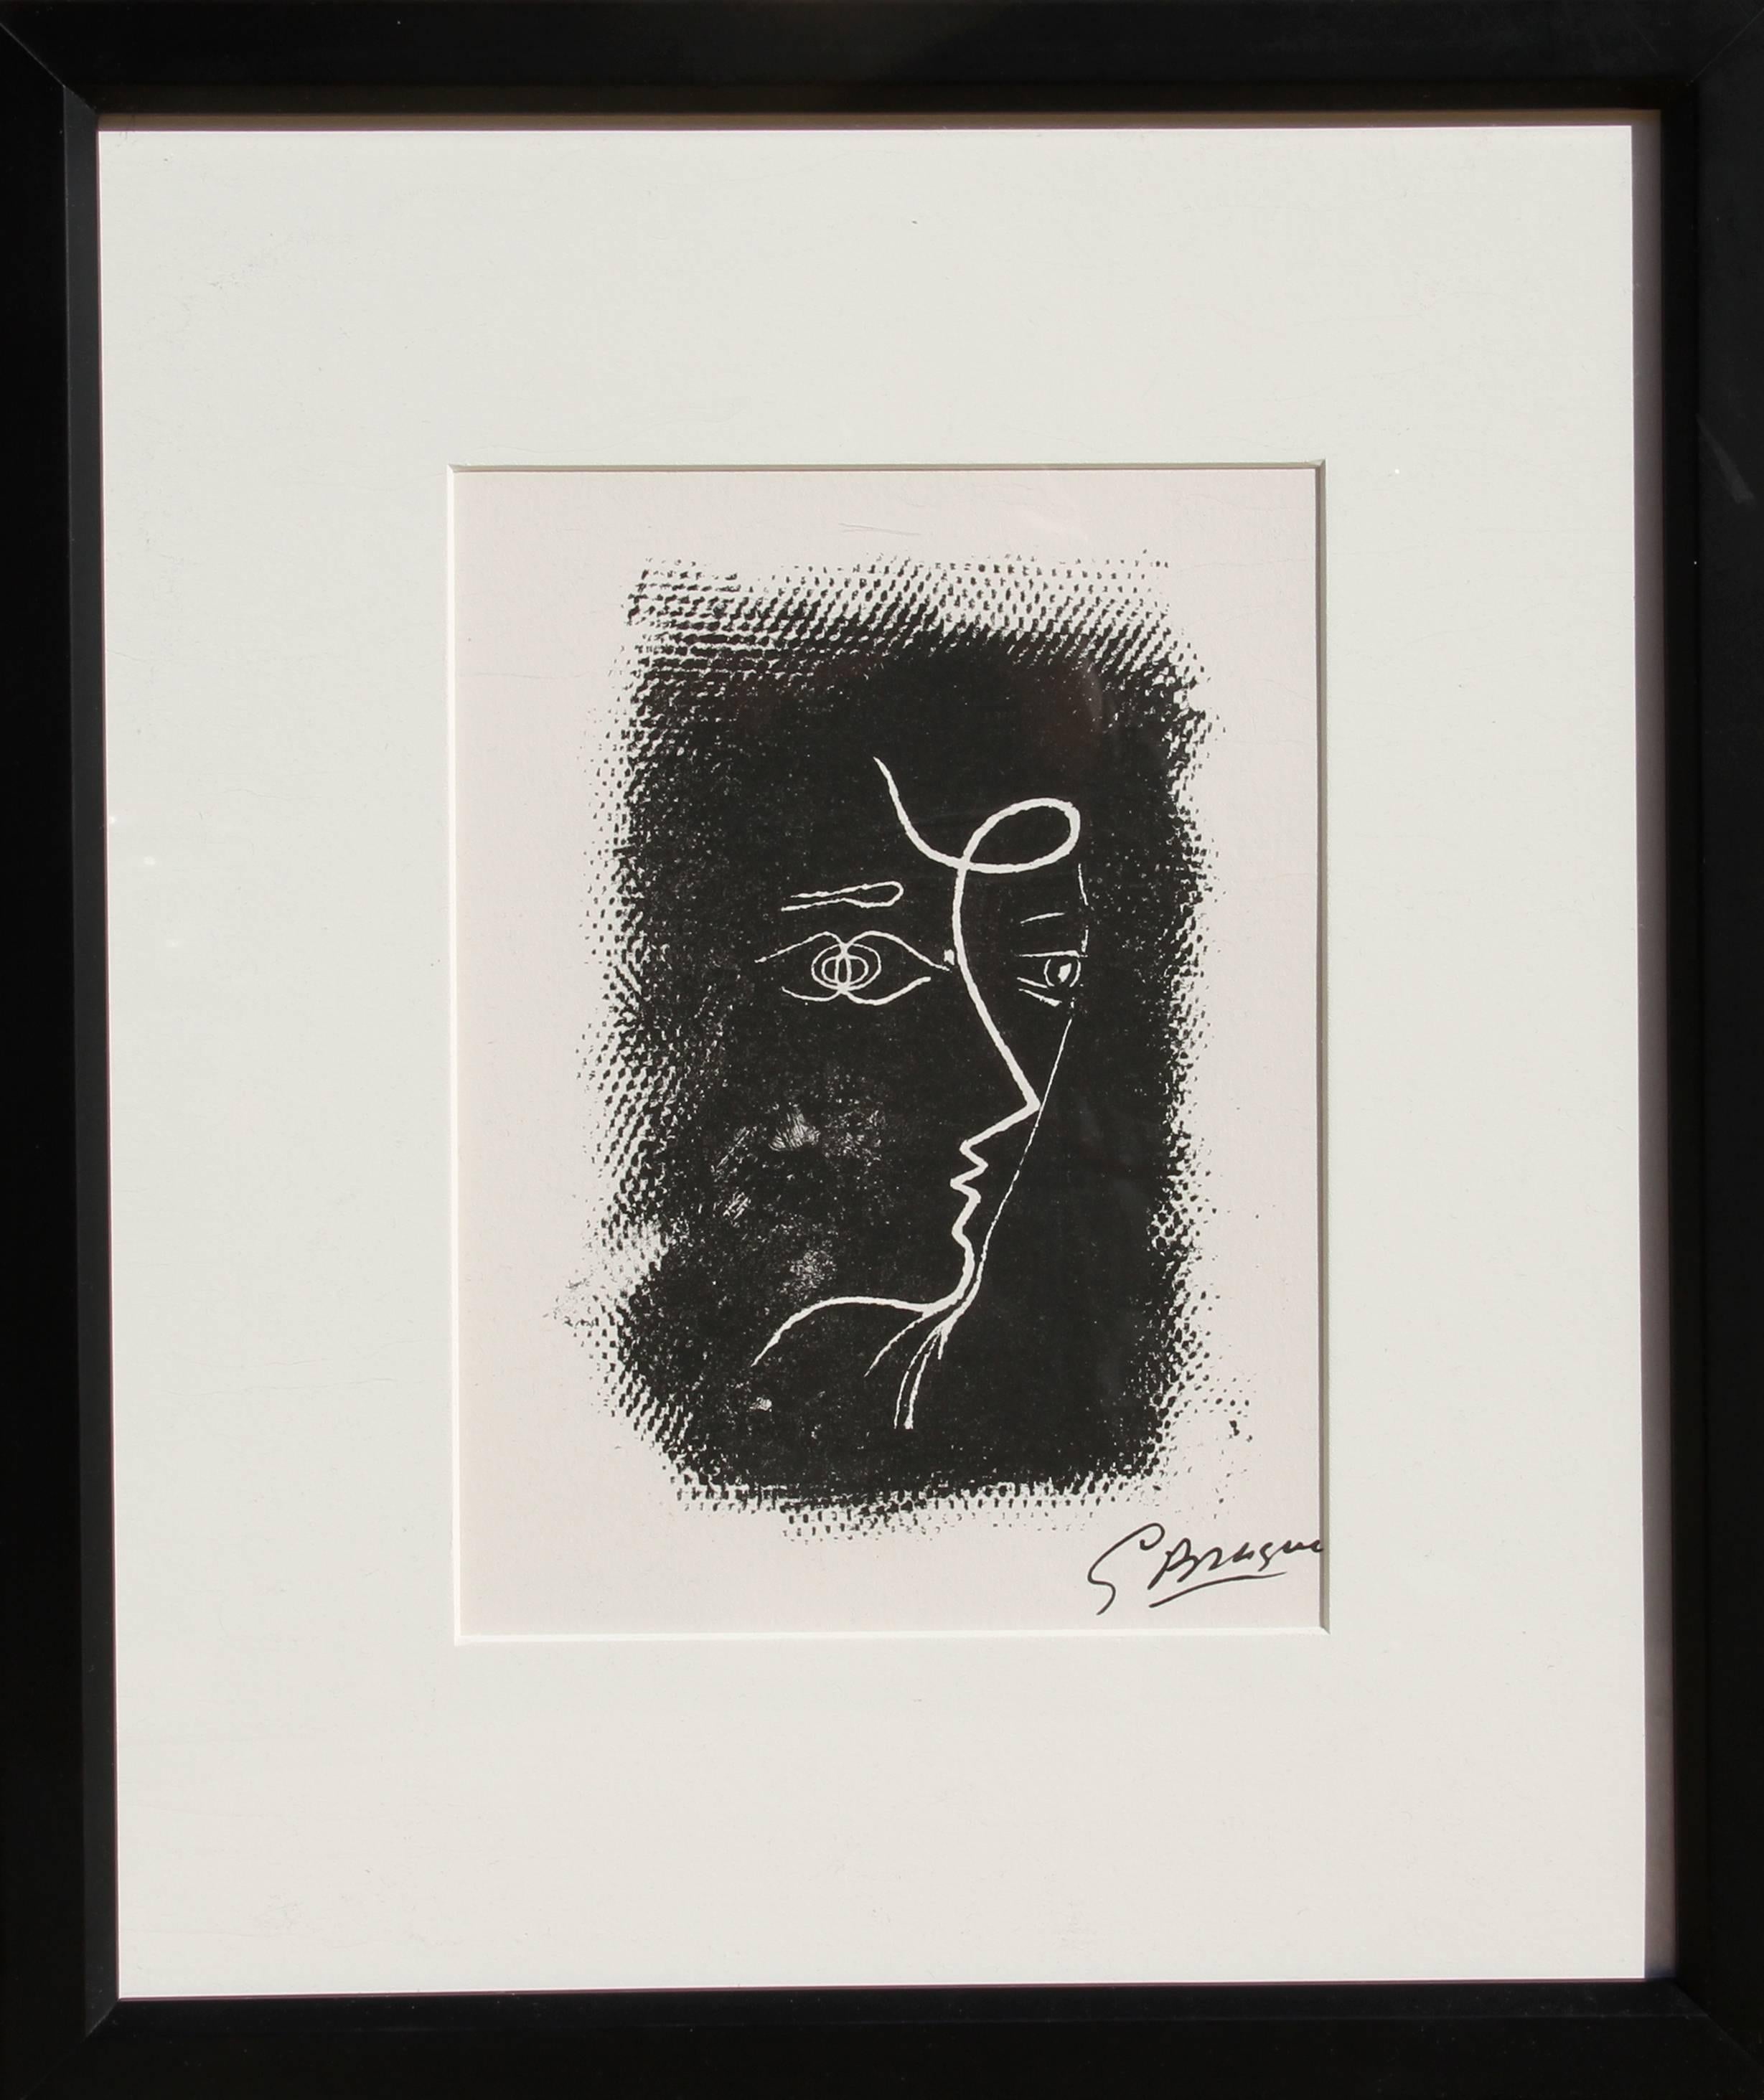 Artist: Georges Braque (after), French (1882 - 1963)
Title: Profil de Femme from Souvenirs de Portraits d'Artistes. Jacques Prévert: Le Coeur à l'ouvrage (M.25)
Year: 1972
Medium: Lithograph, signed in the plate
Edition: 800
Image Size: 8 x 5.5